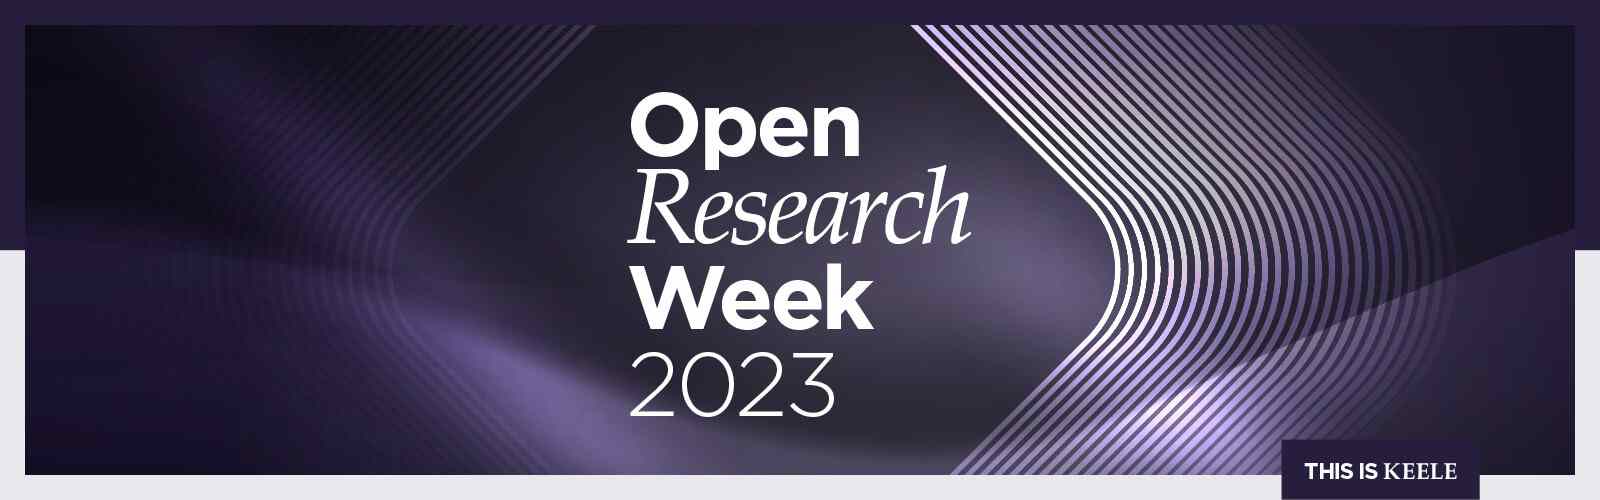 Open Research Week 2023 branding